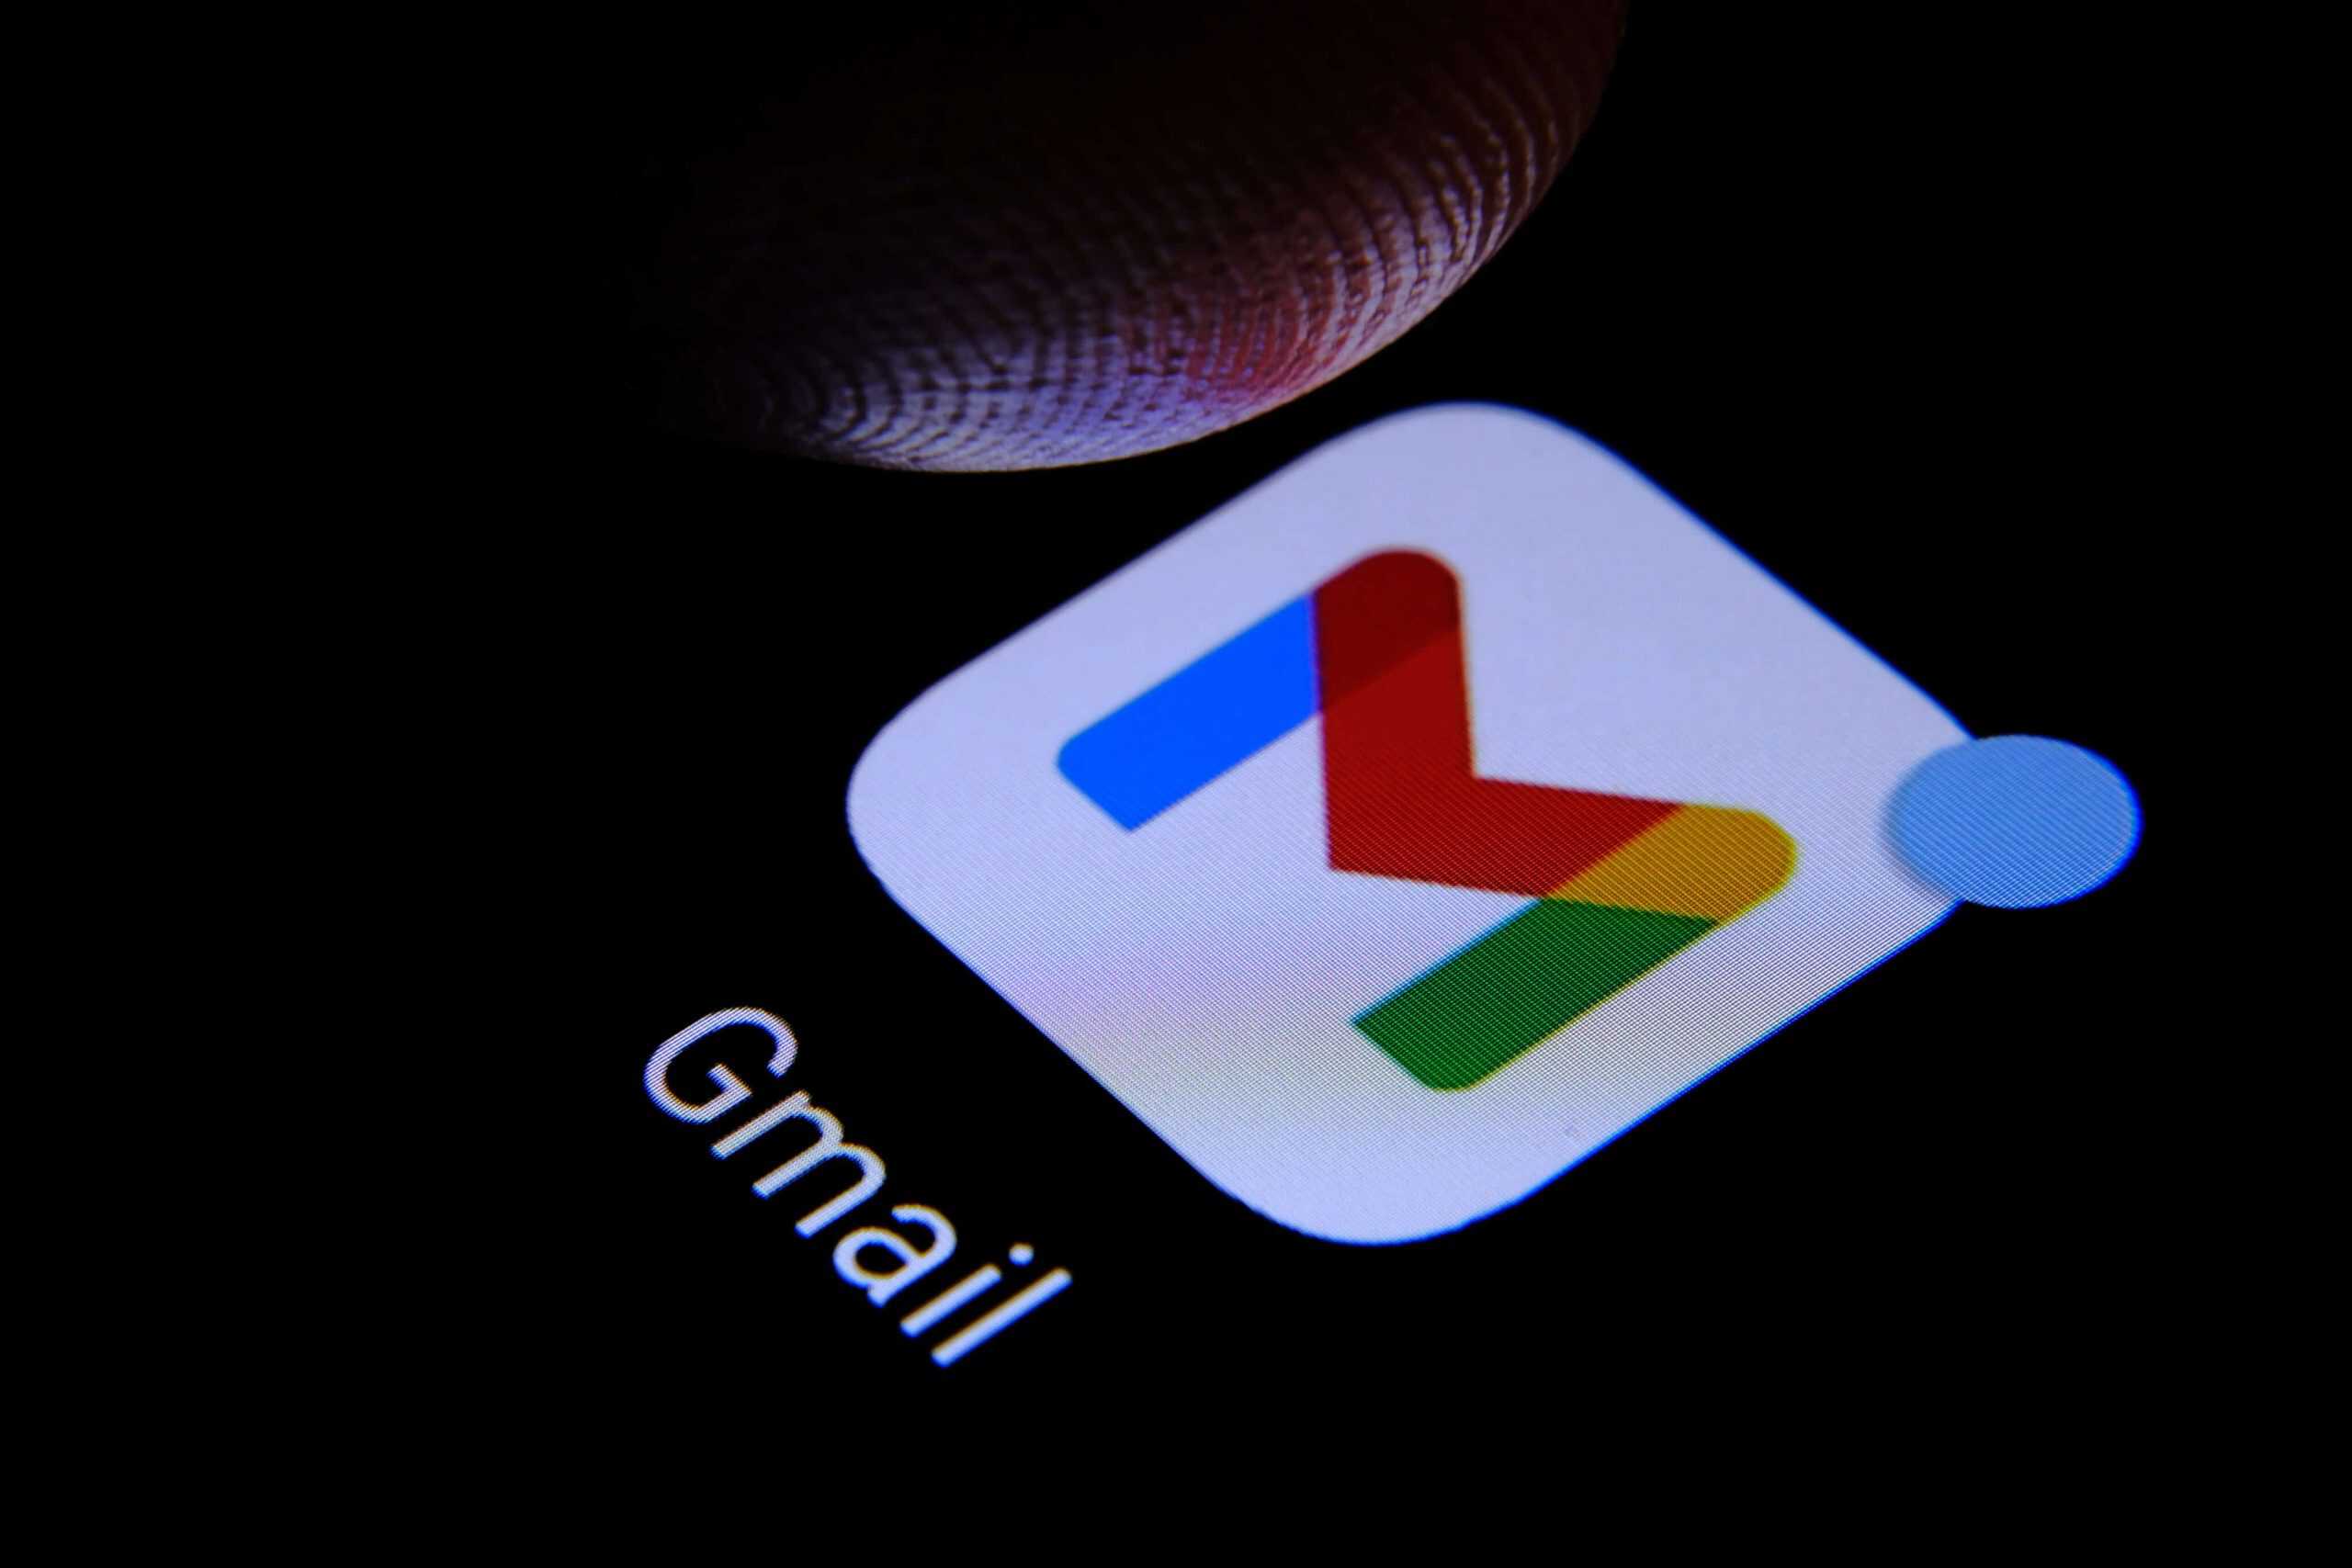 Imagem para ilustrar tutorial sobre o Gmail